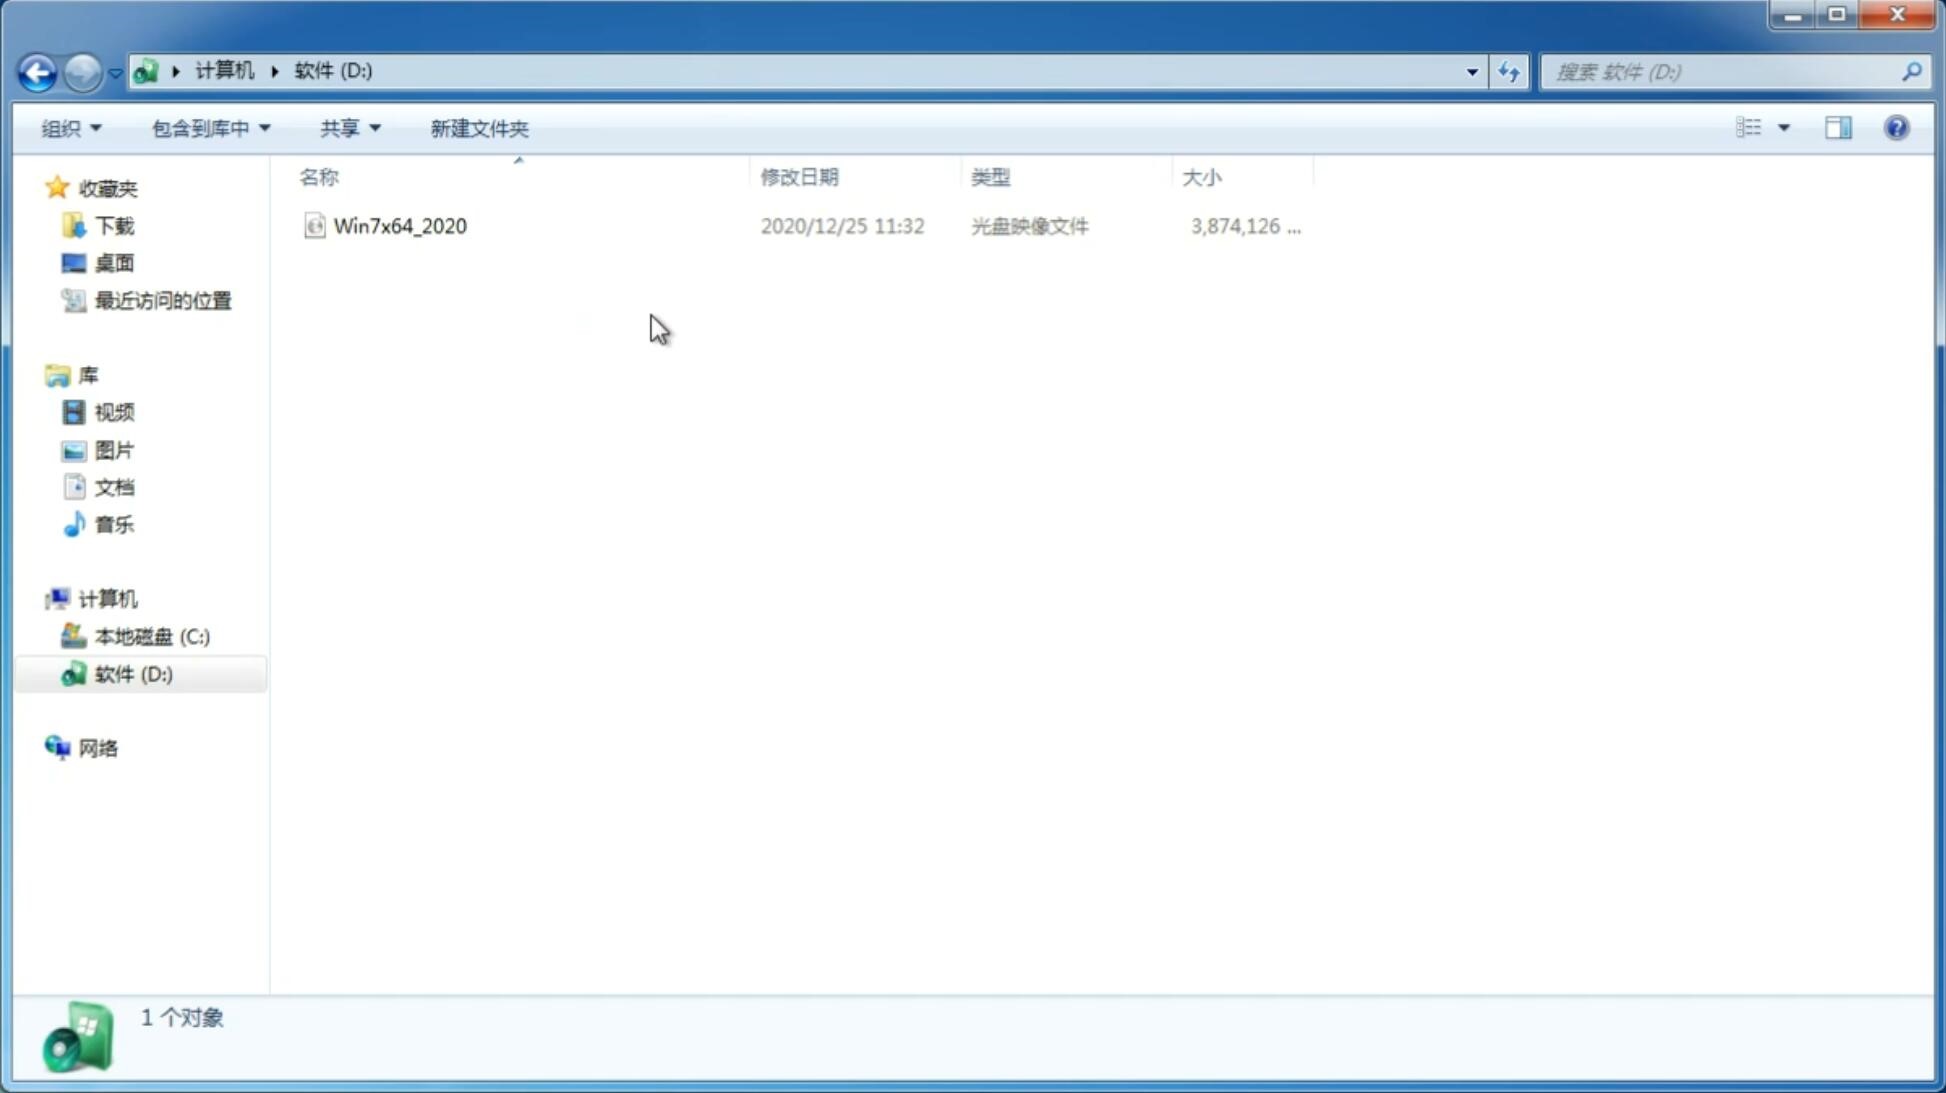 中关村系统 Ghost windows7 32 SP1 纯净中文旗舰版系统下载 V2021.04(1)